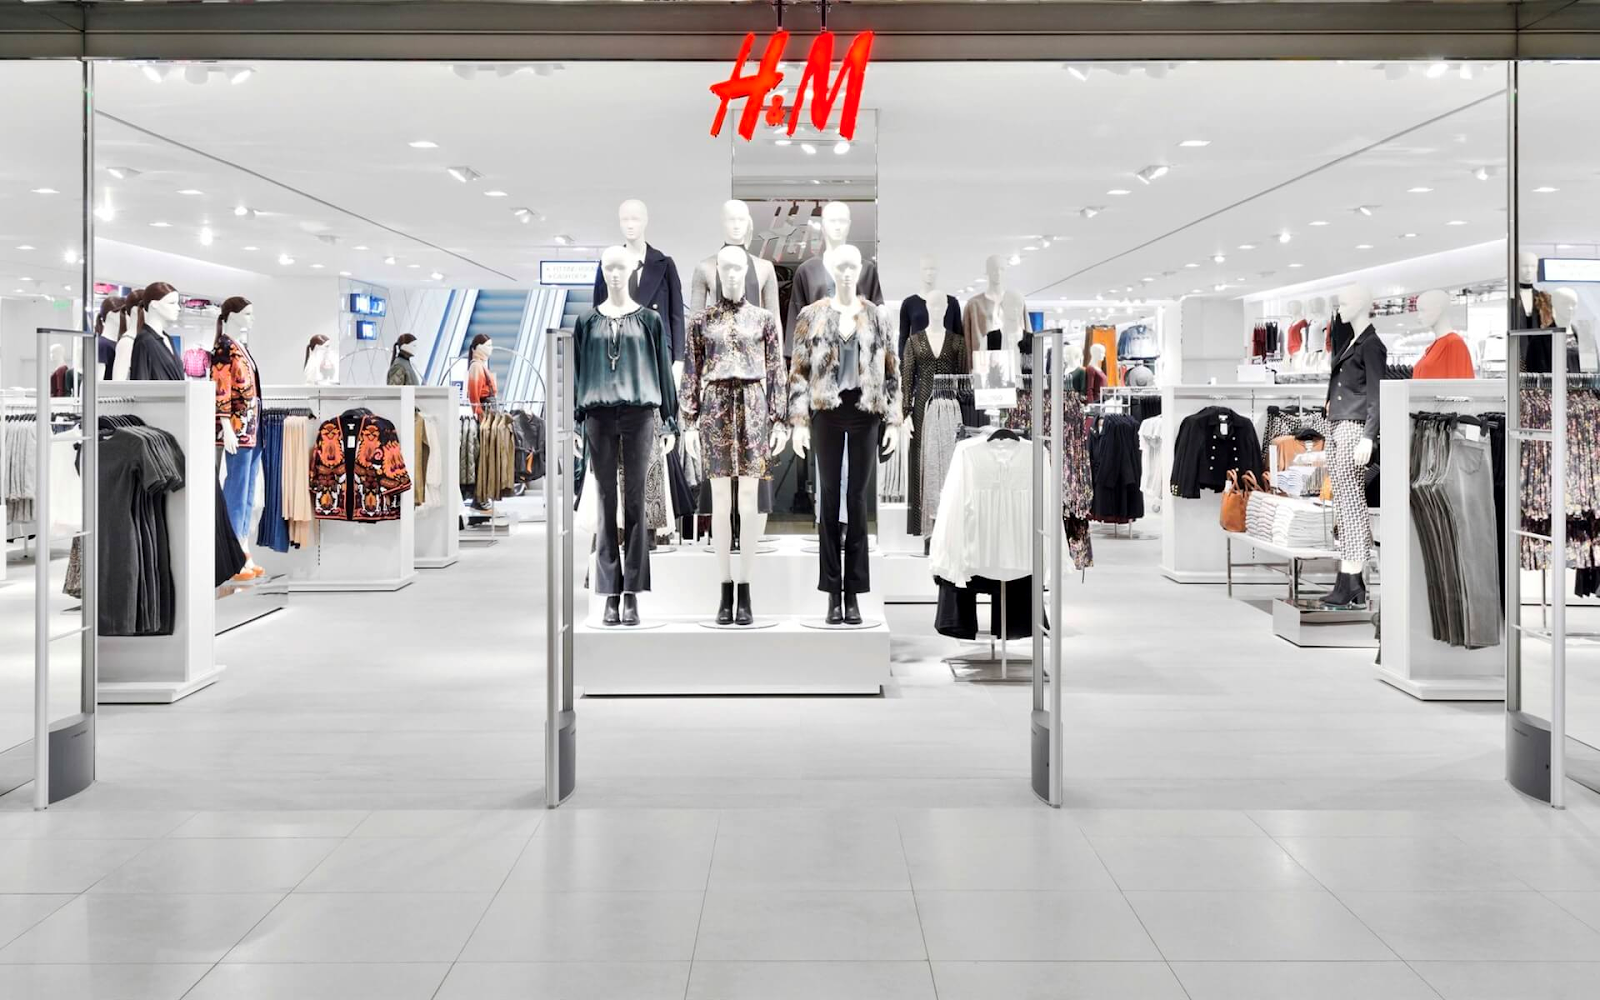 H&M khai trương cửa hàng thứ 5 tại Hùng Vương plaza